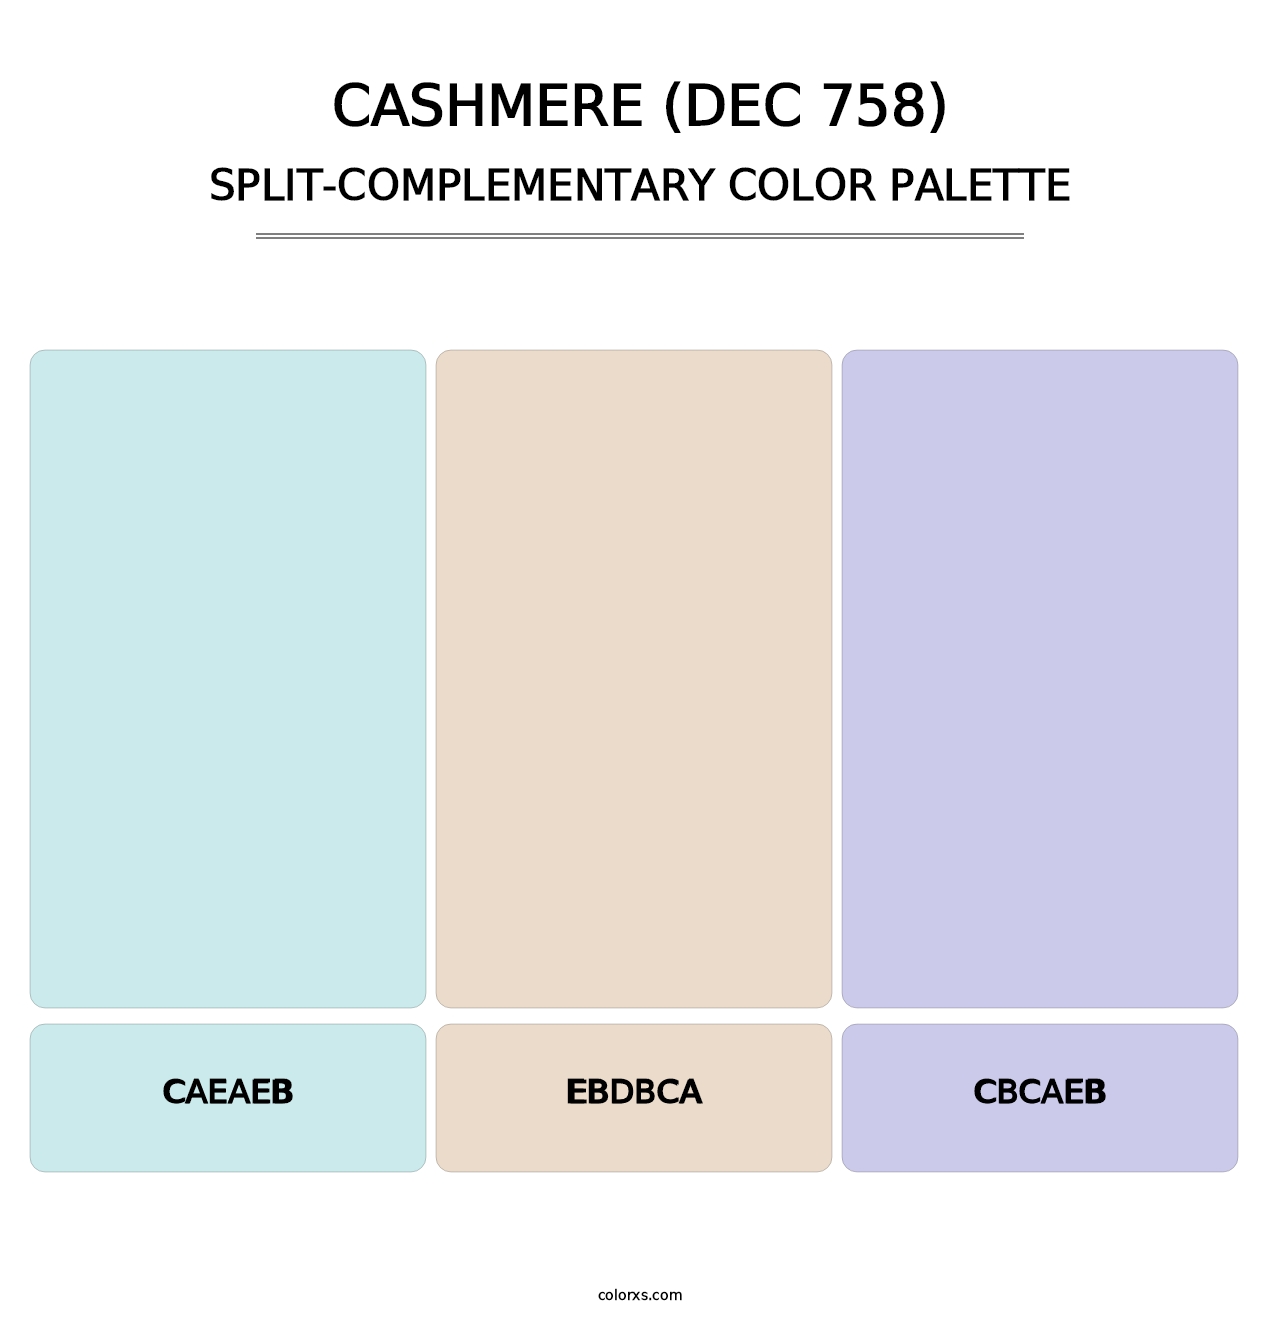 Cashmere (DEC 758) - Split-Complementary Color Palette